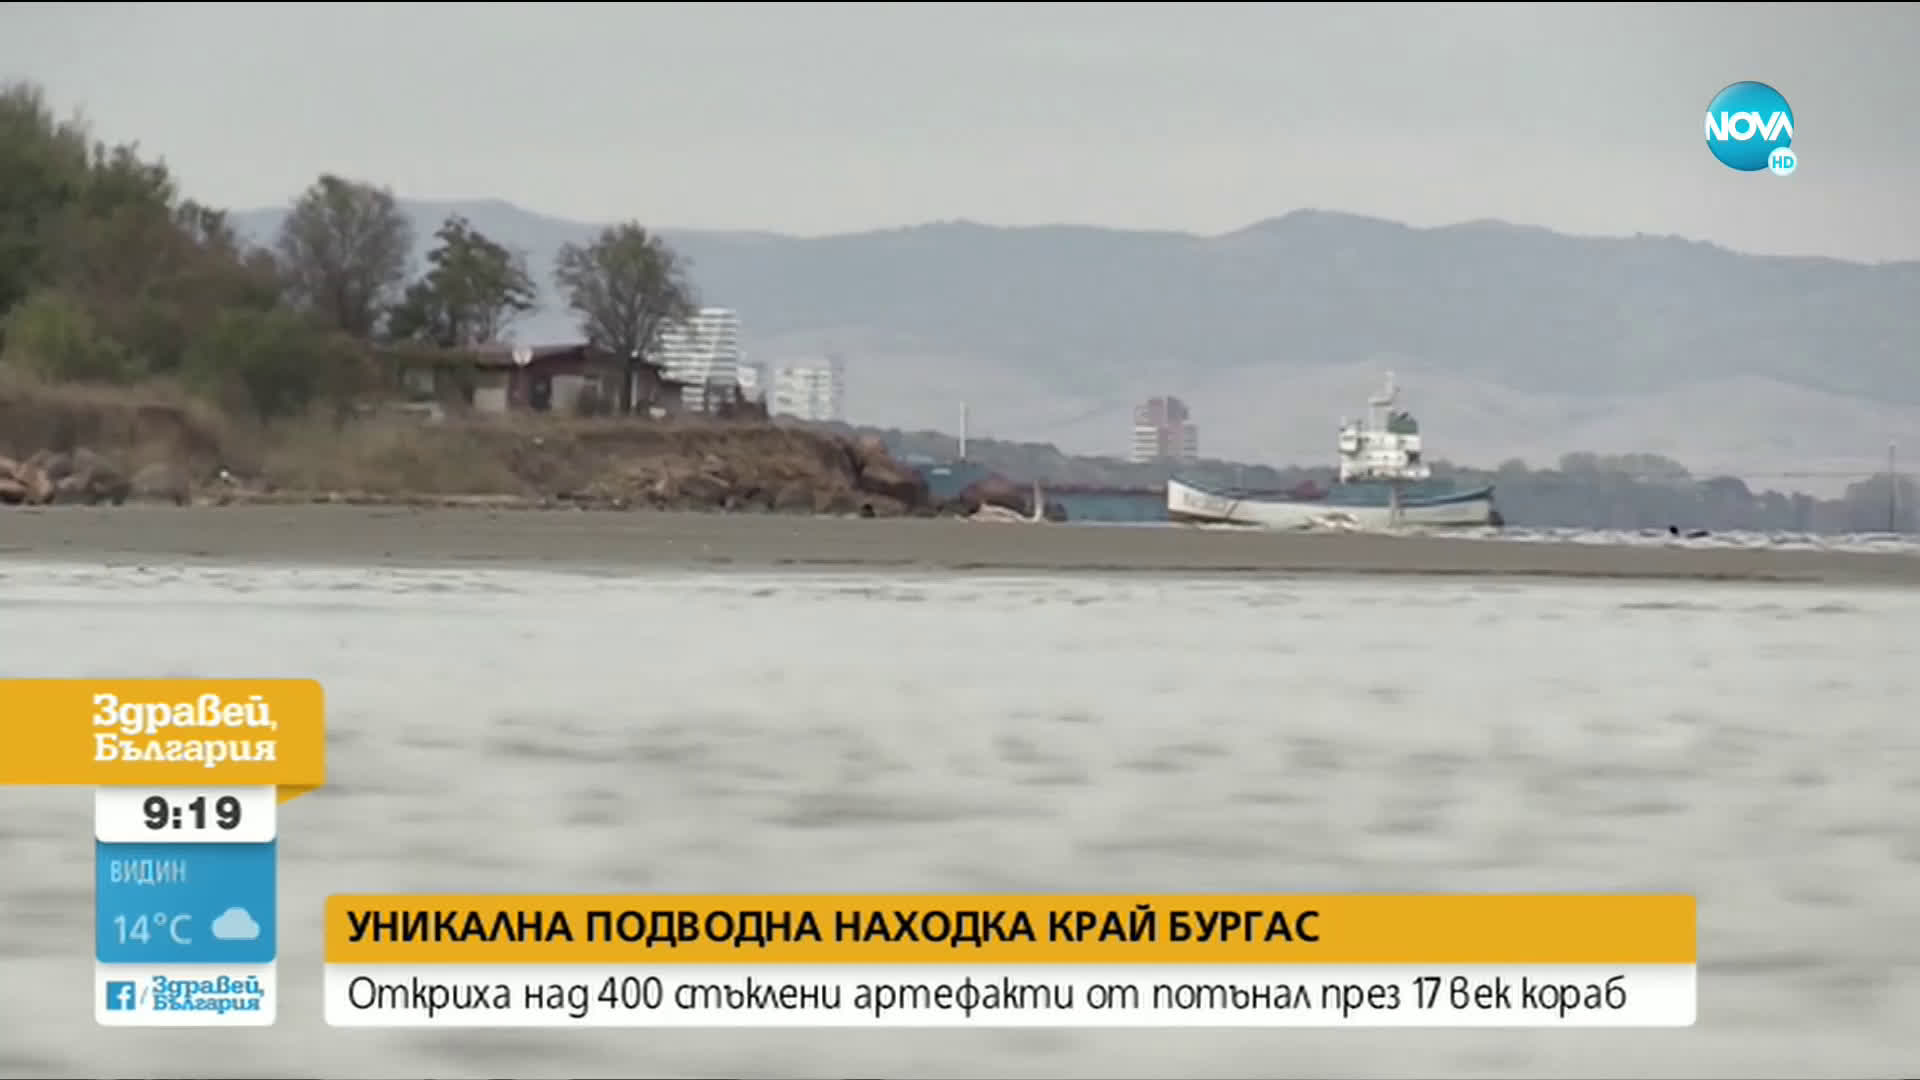 Откриха уникална подводна находка край Бургас